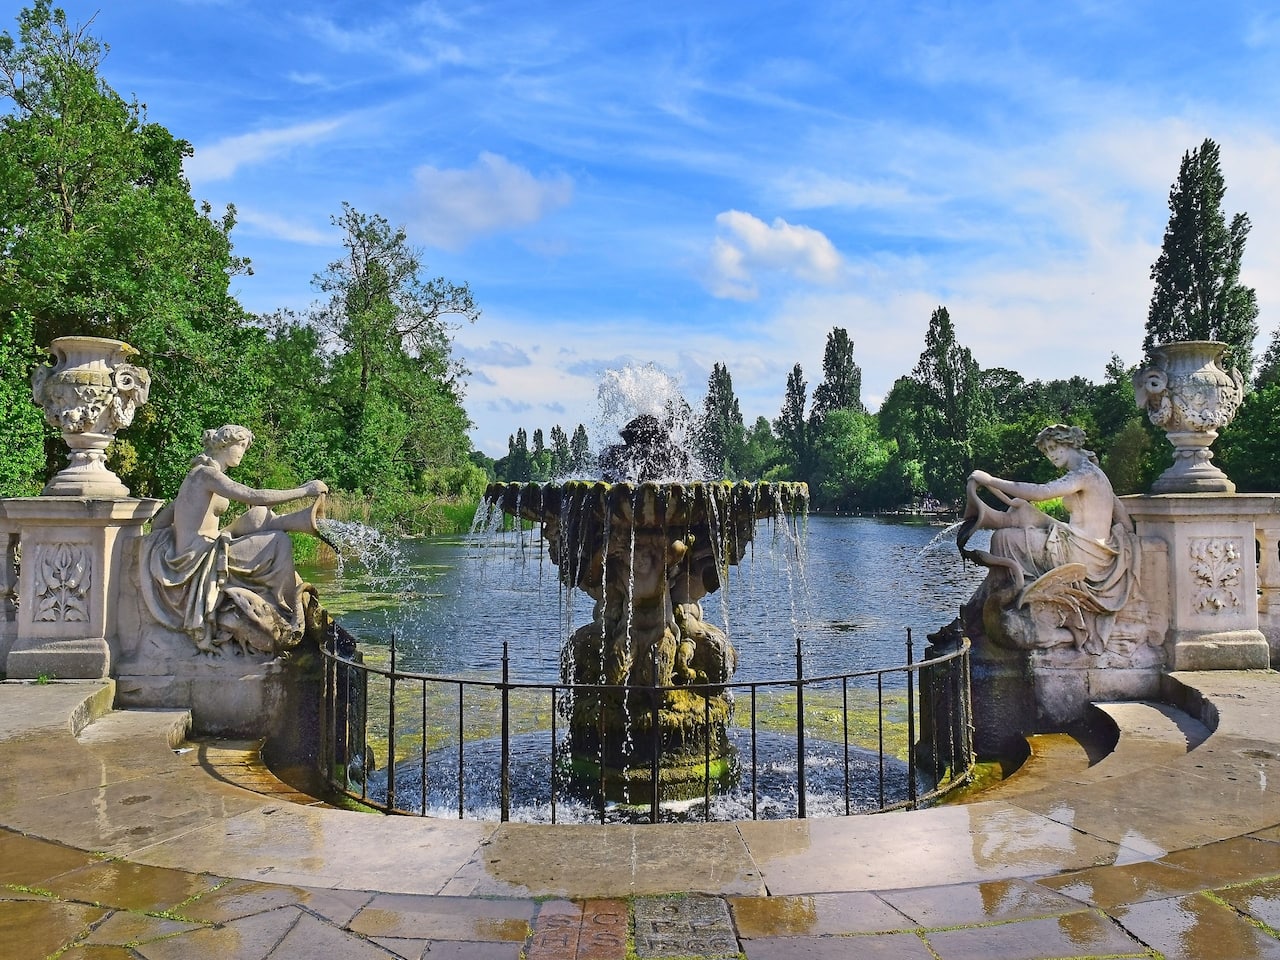 Holland Park fountain